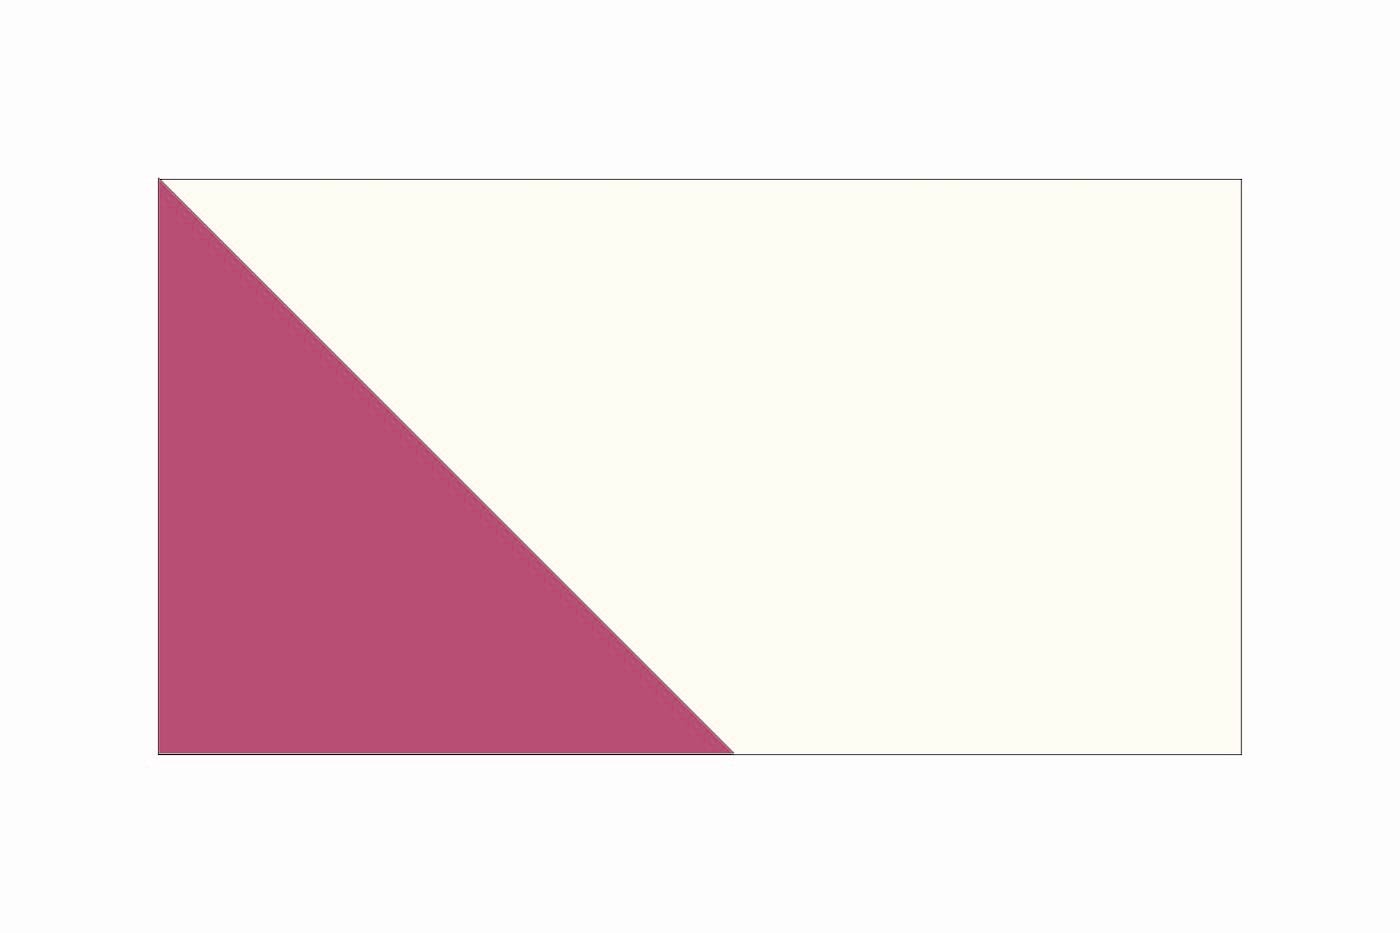 illustration de courtepointe avec des carrés et des rectangles en jaune, rose et bleu